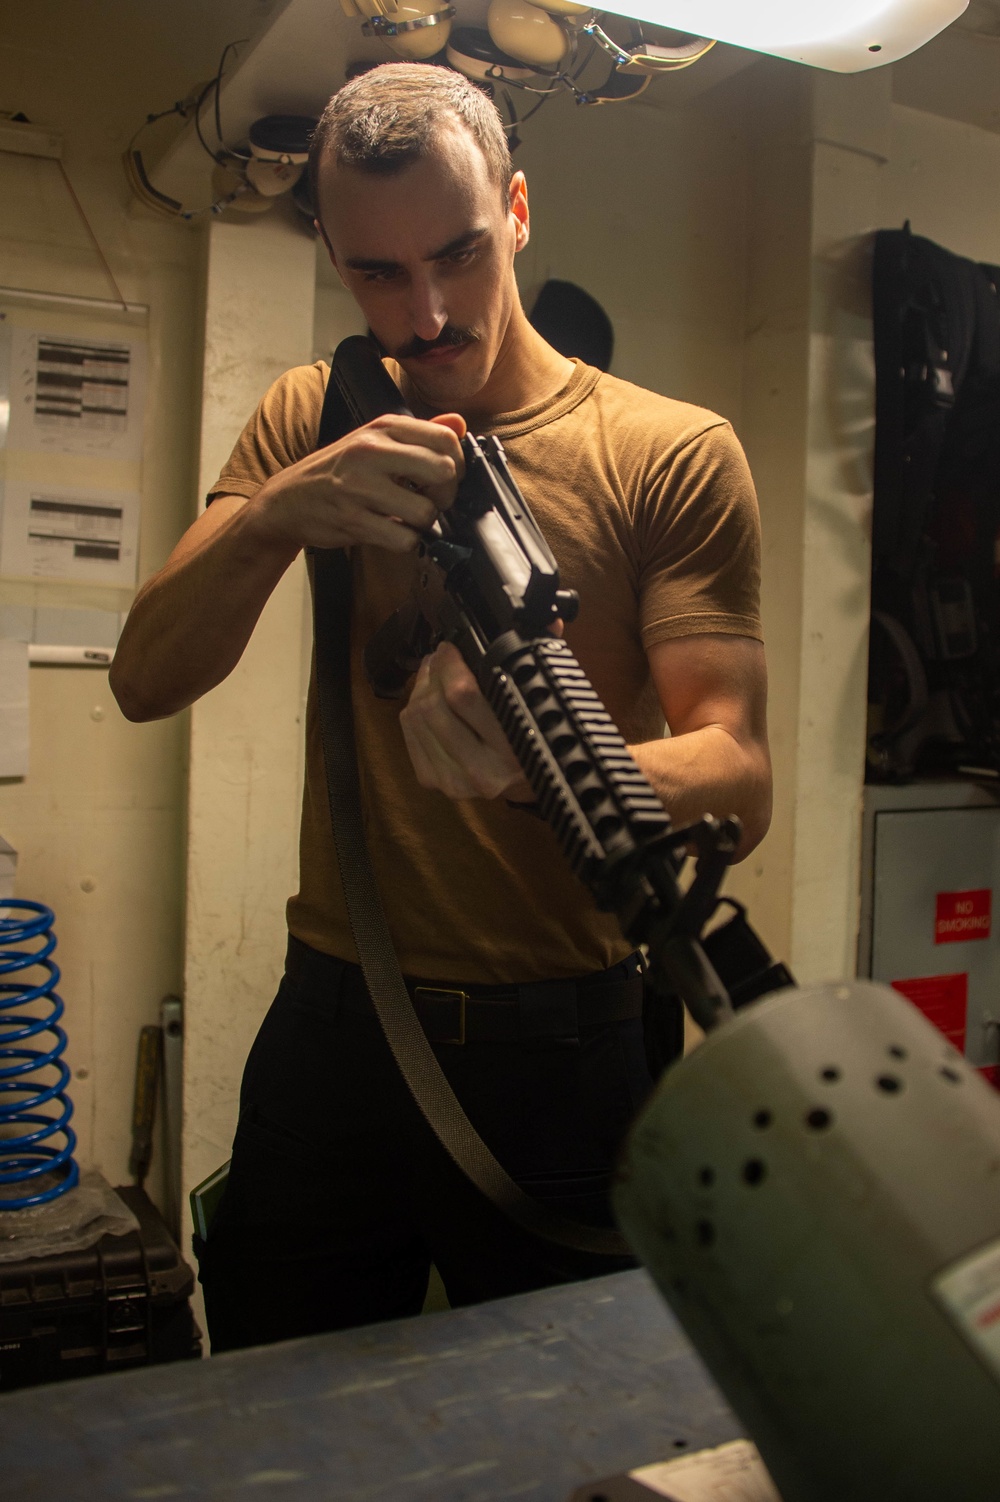 USS Carl Vinson (CVN 70) Sailor Conducts Inspection on an M4 Assault Rifle